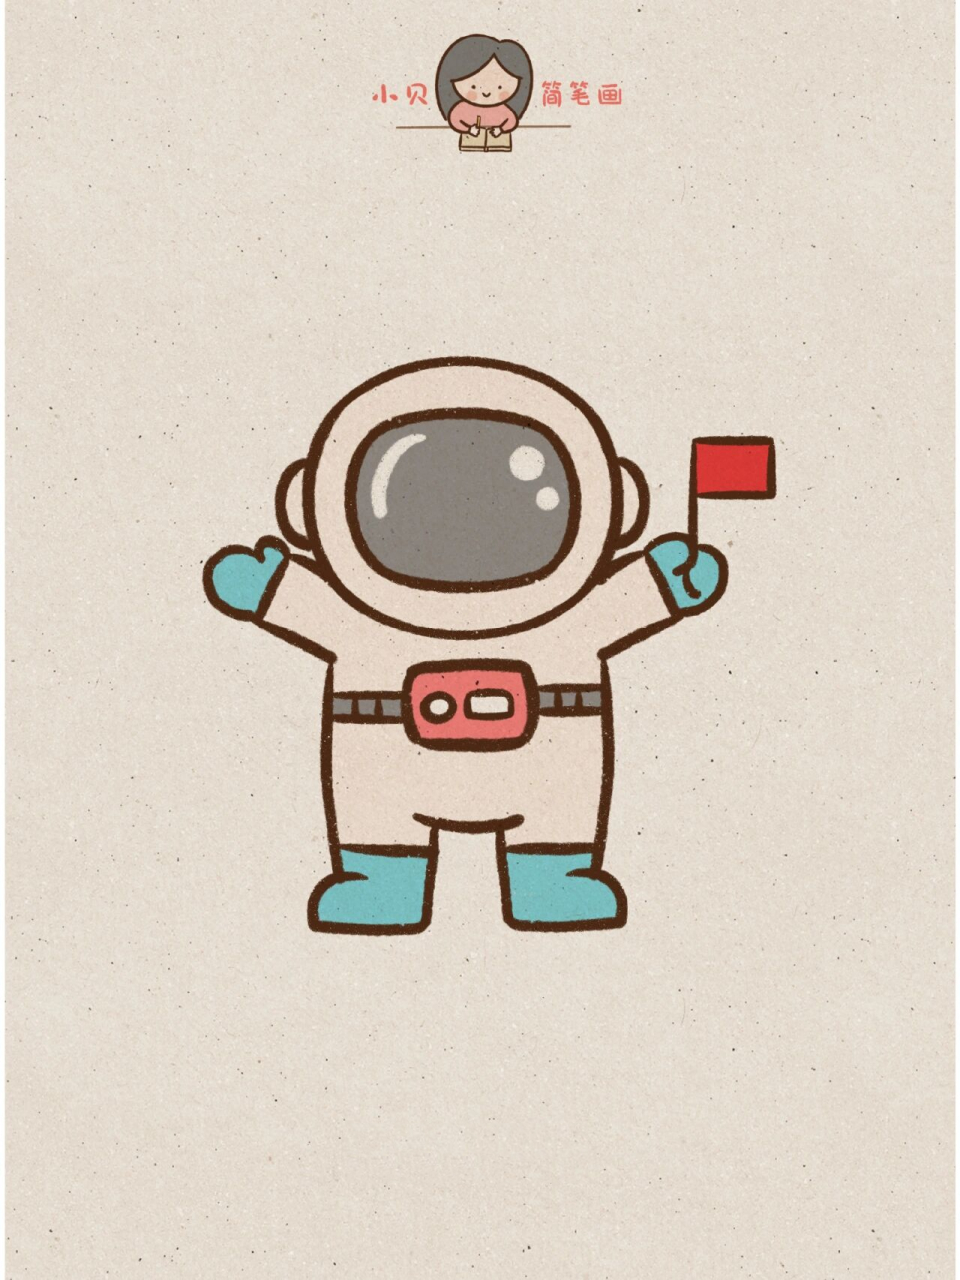 宇航员的简笔画 彩色图片